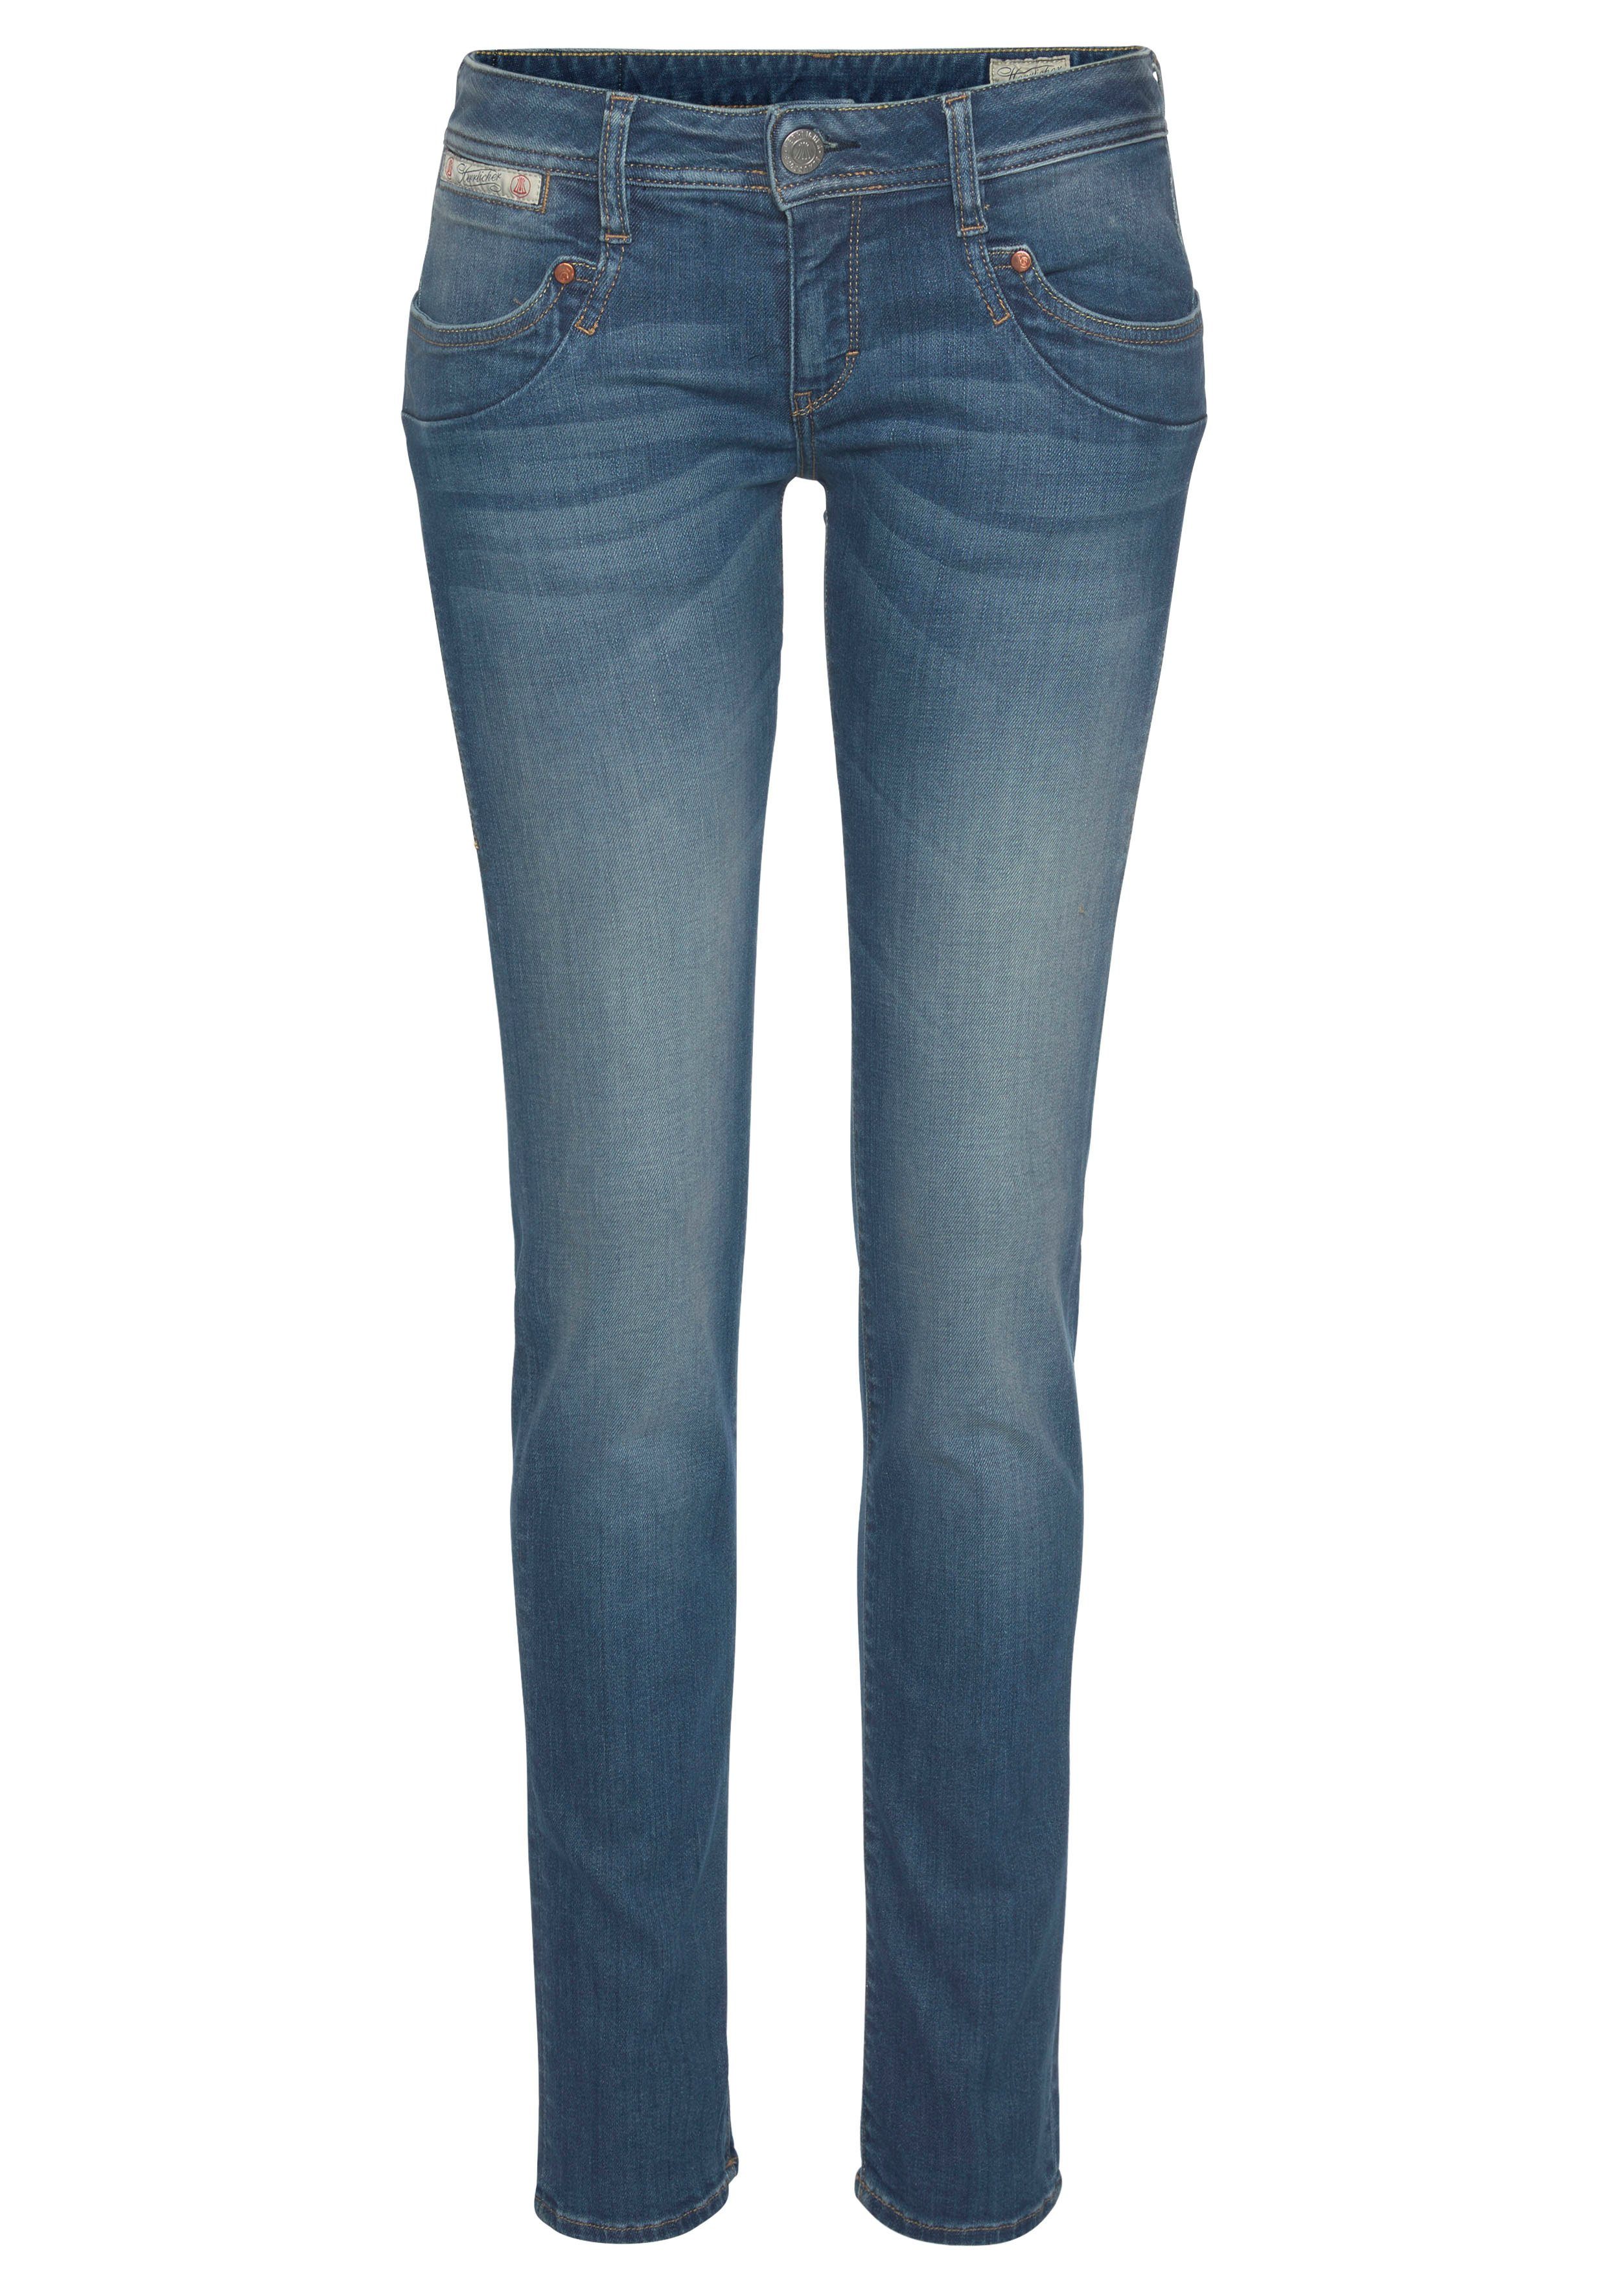 Kitotex PIPER Technology Herrlicher ORGANIC umweltfreundlich Slim-fit-Jeans SLIM dank